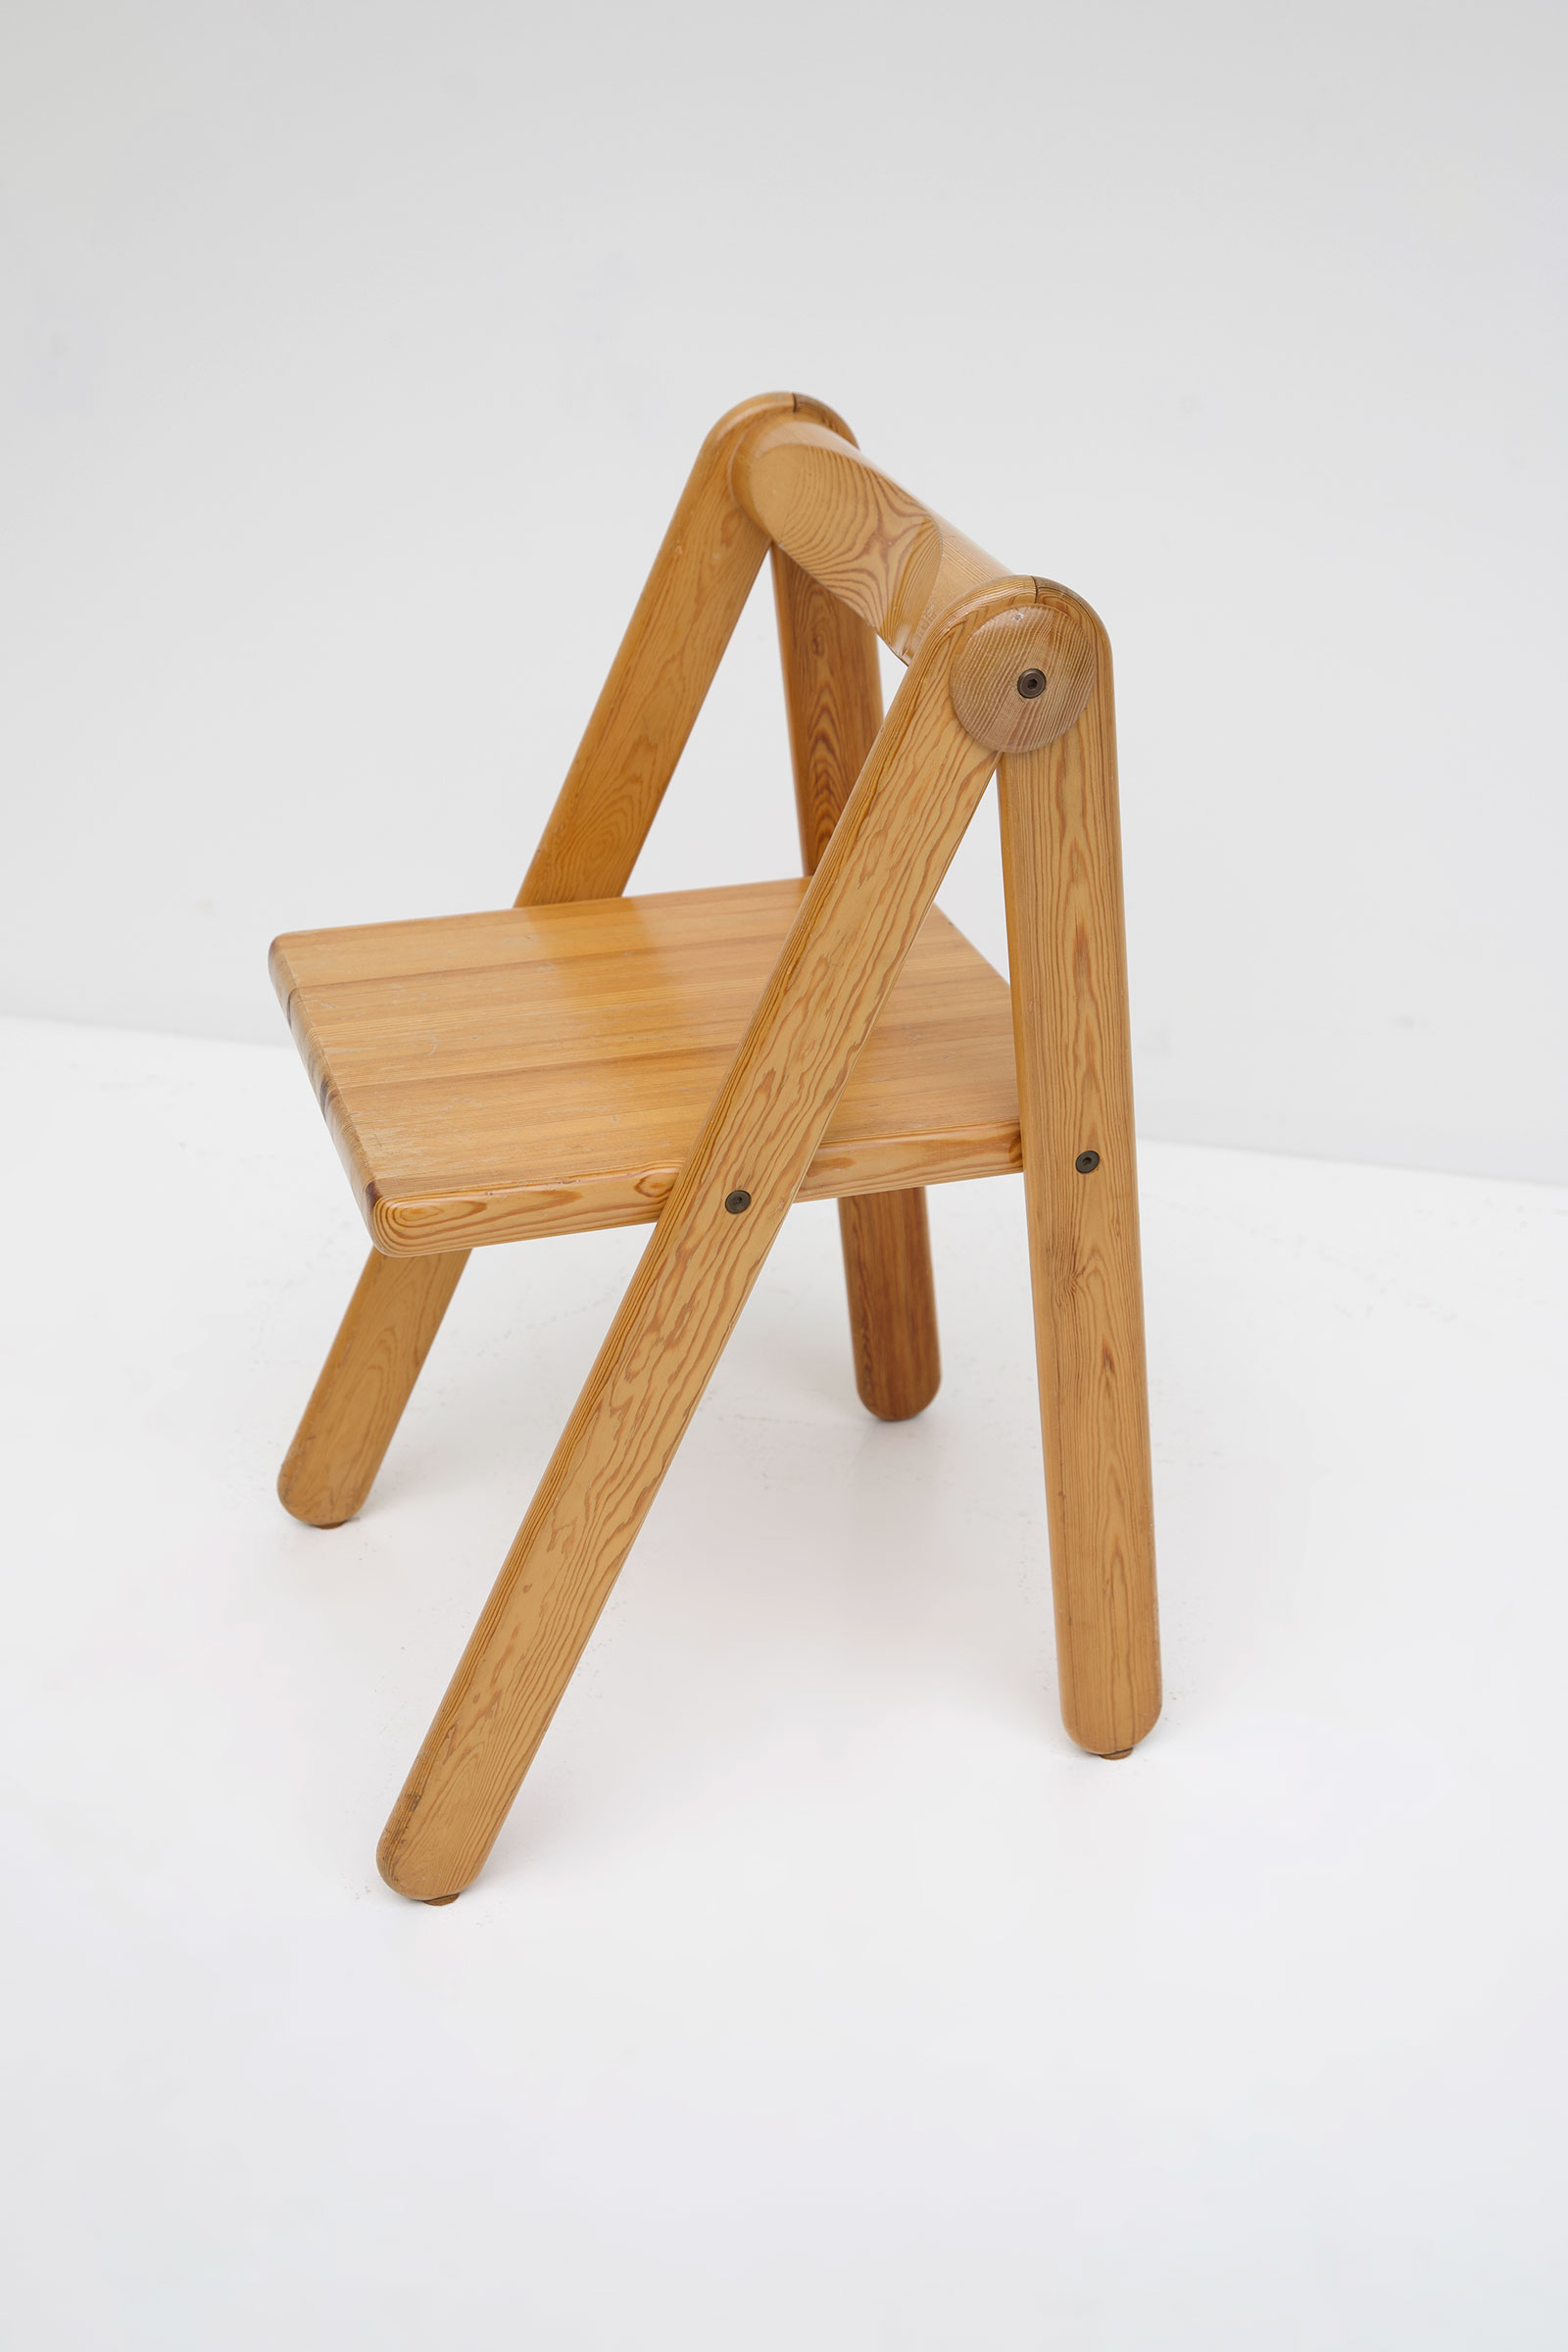 Childrens desk furniture by Pierre Grosjean setimage 16